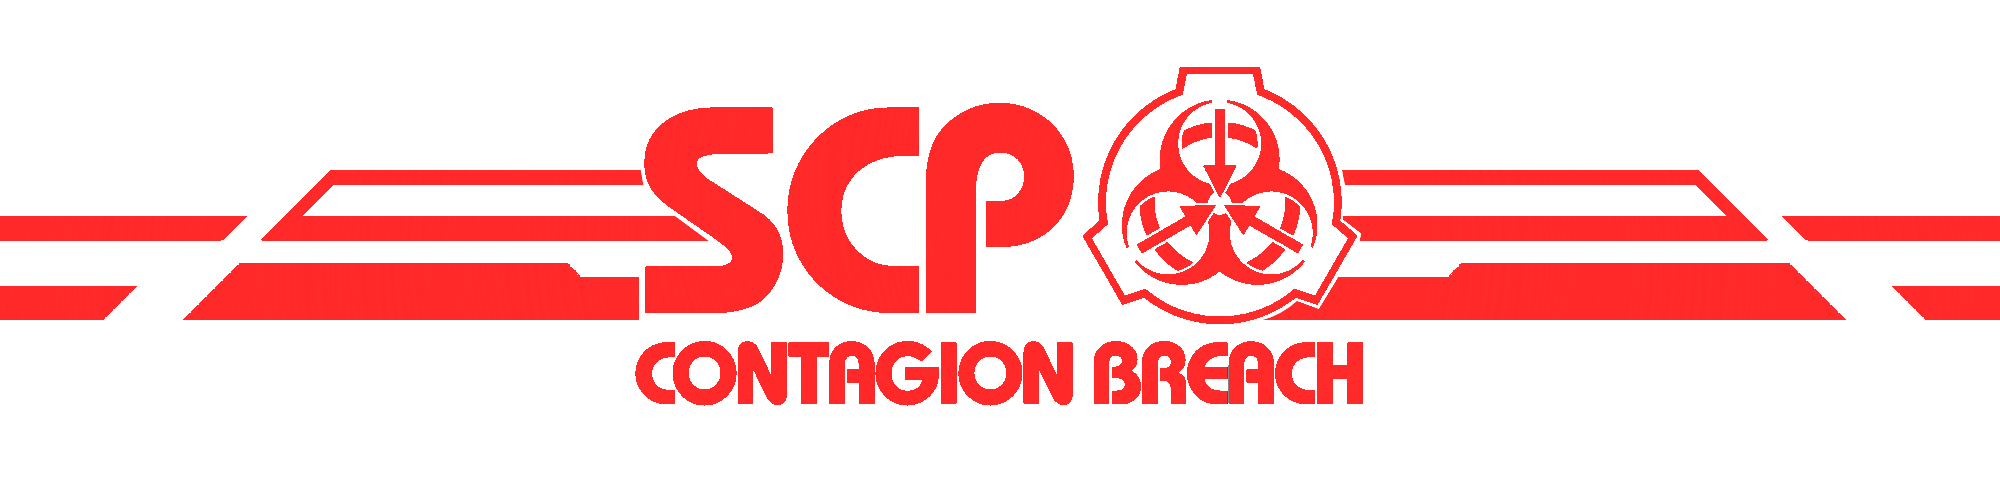 SCP: Contagion Breach